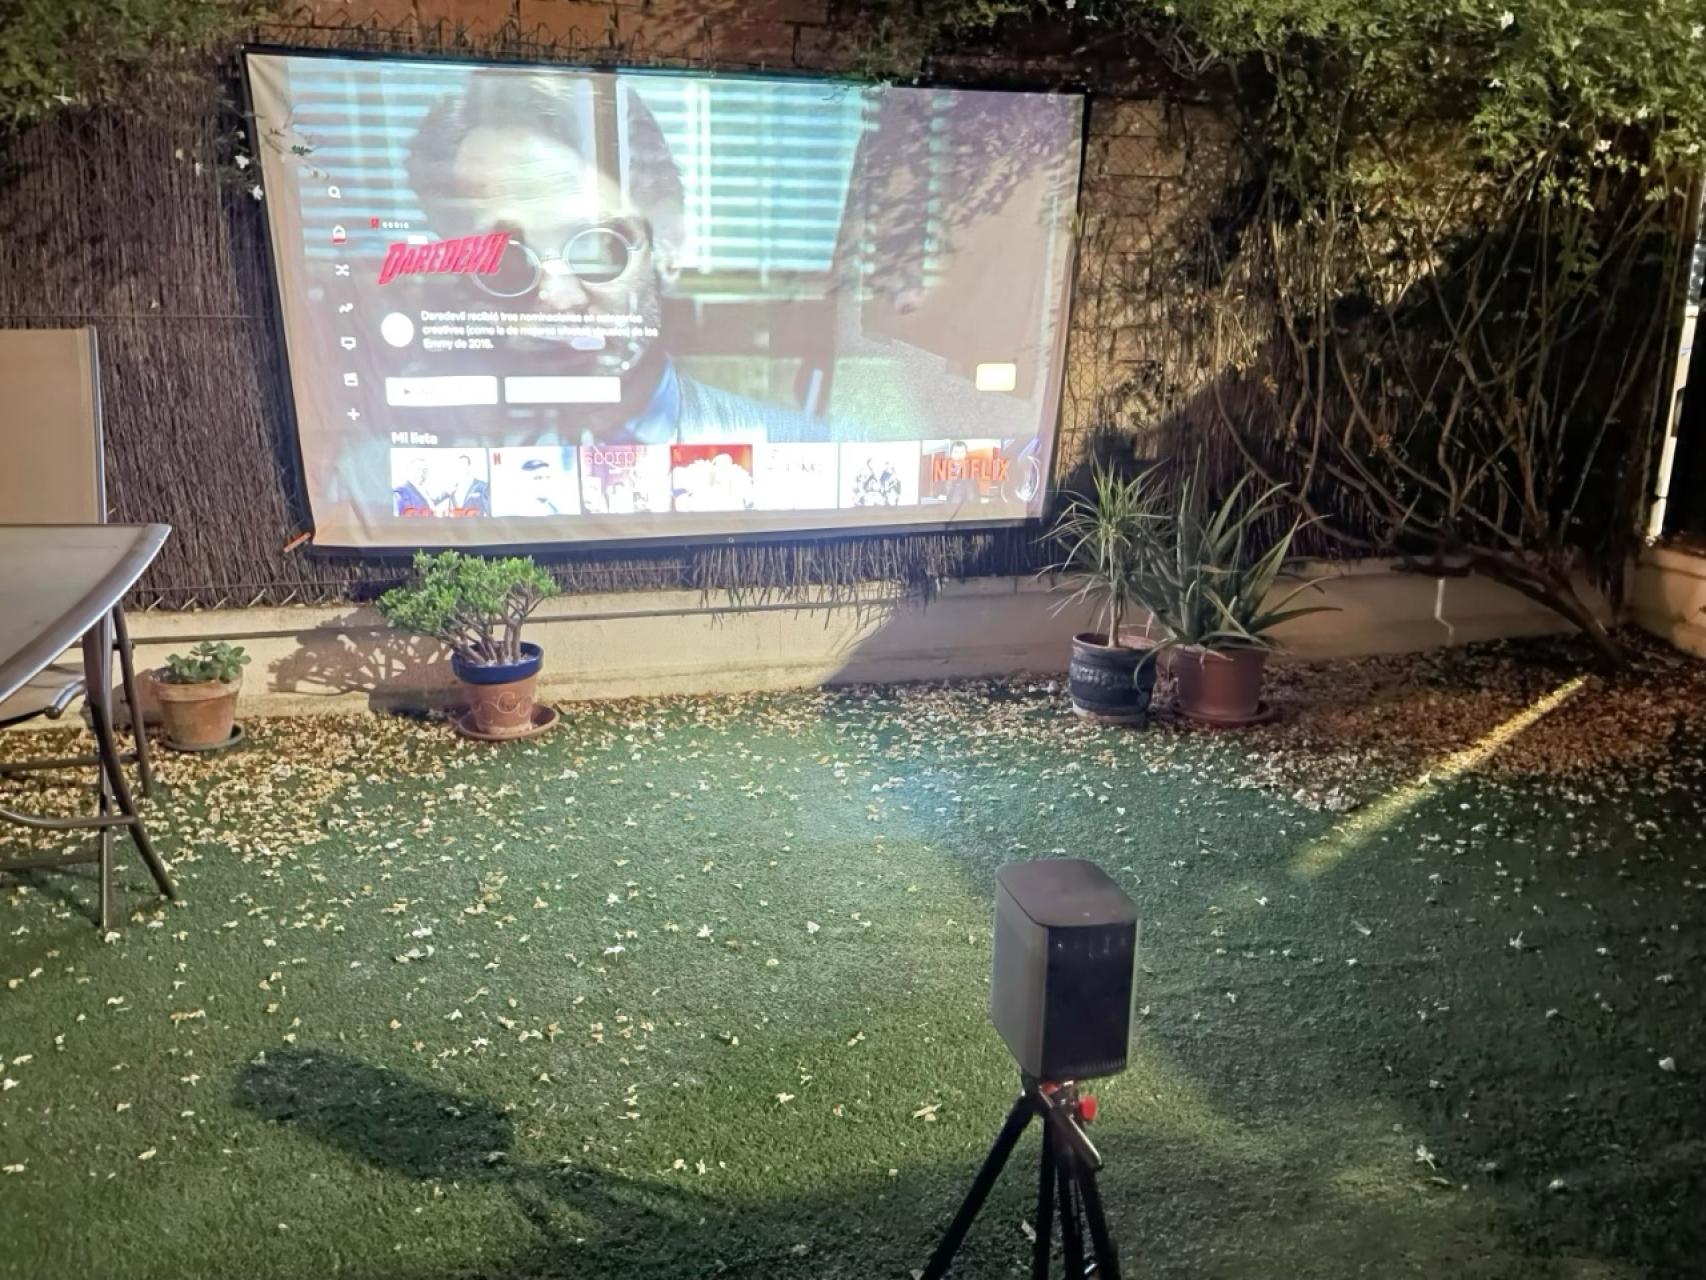 Xgimi Halo: probamos el proyector portátil con Android TV y diseño